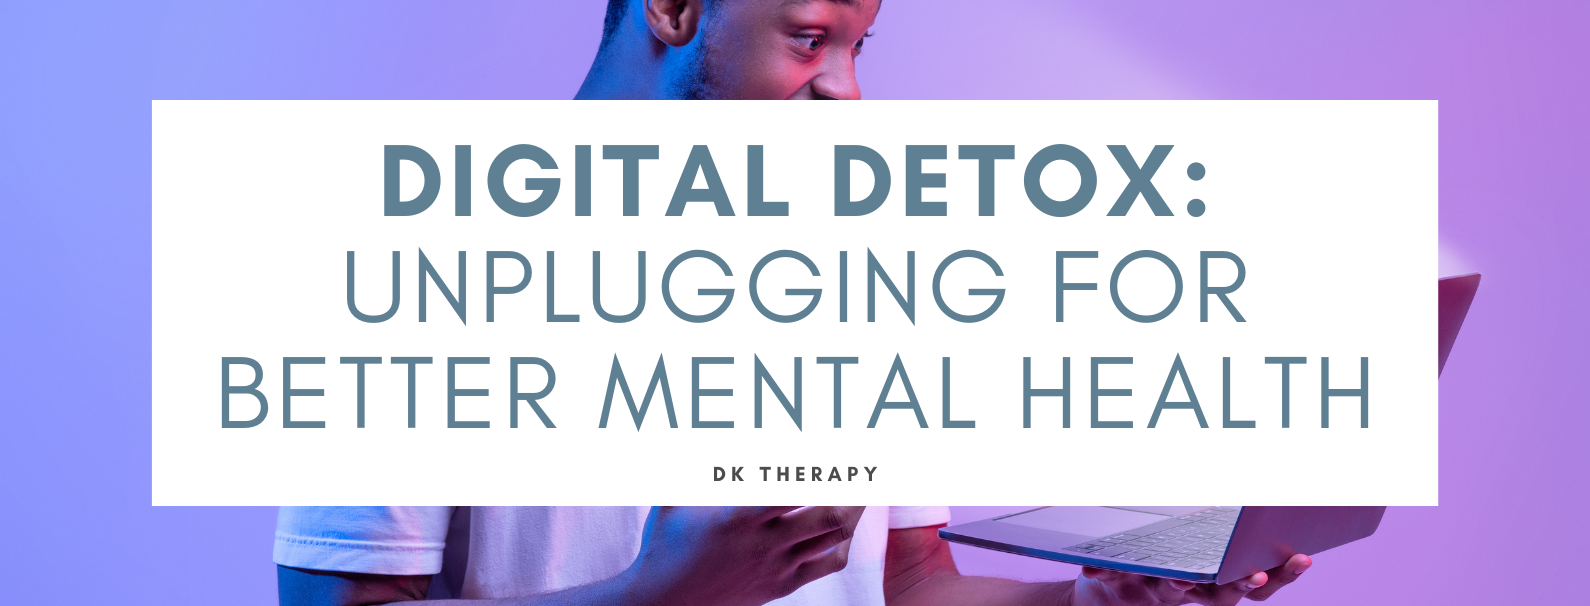 Digital Detox Unplugging for Better Mental Health